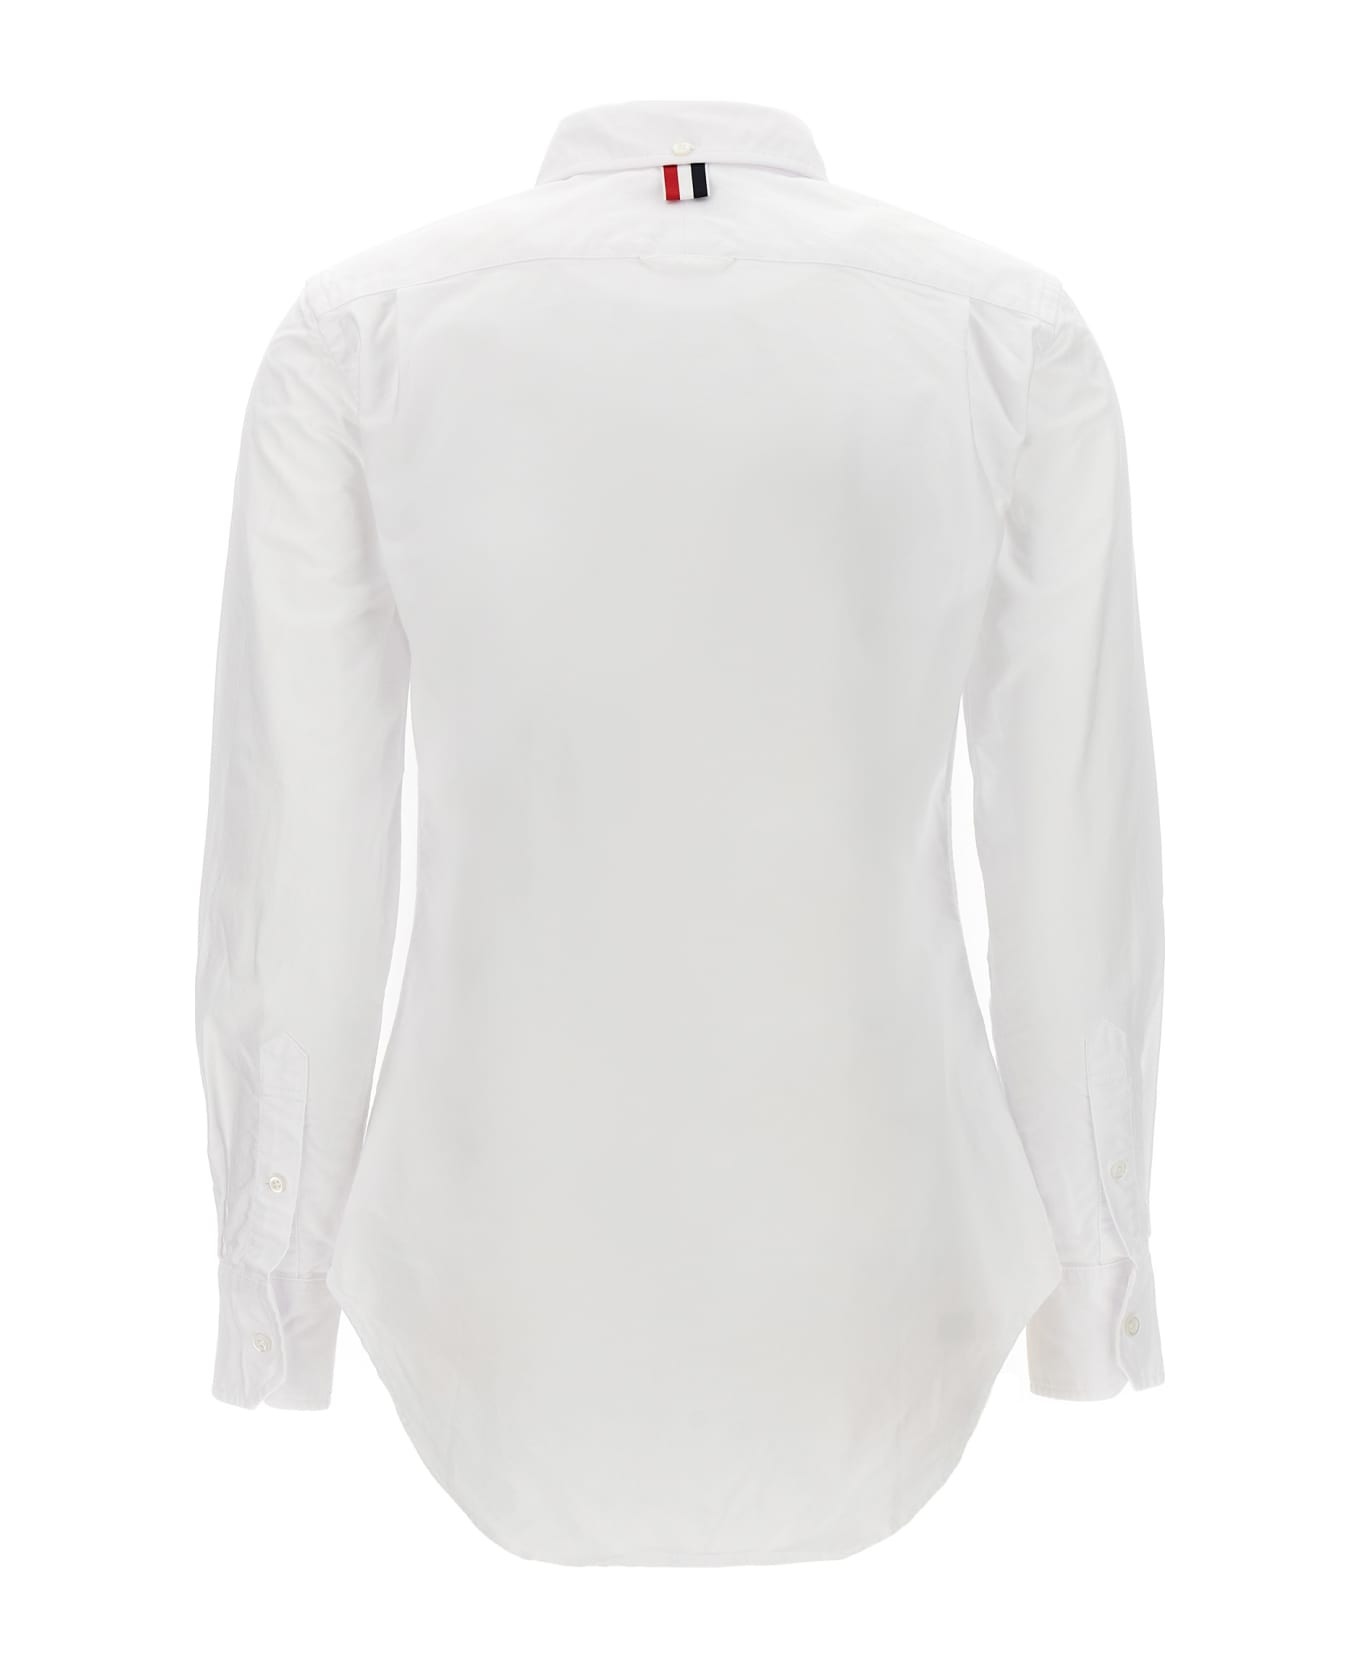 Thom Browne 'rwb' Shirt - White